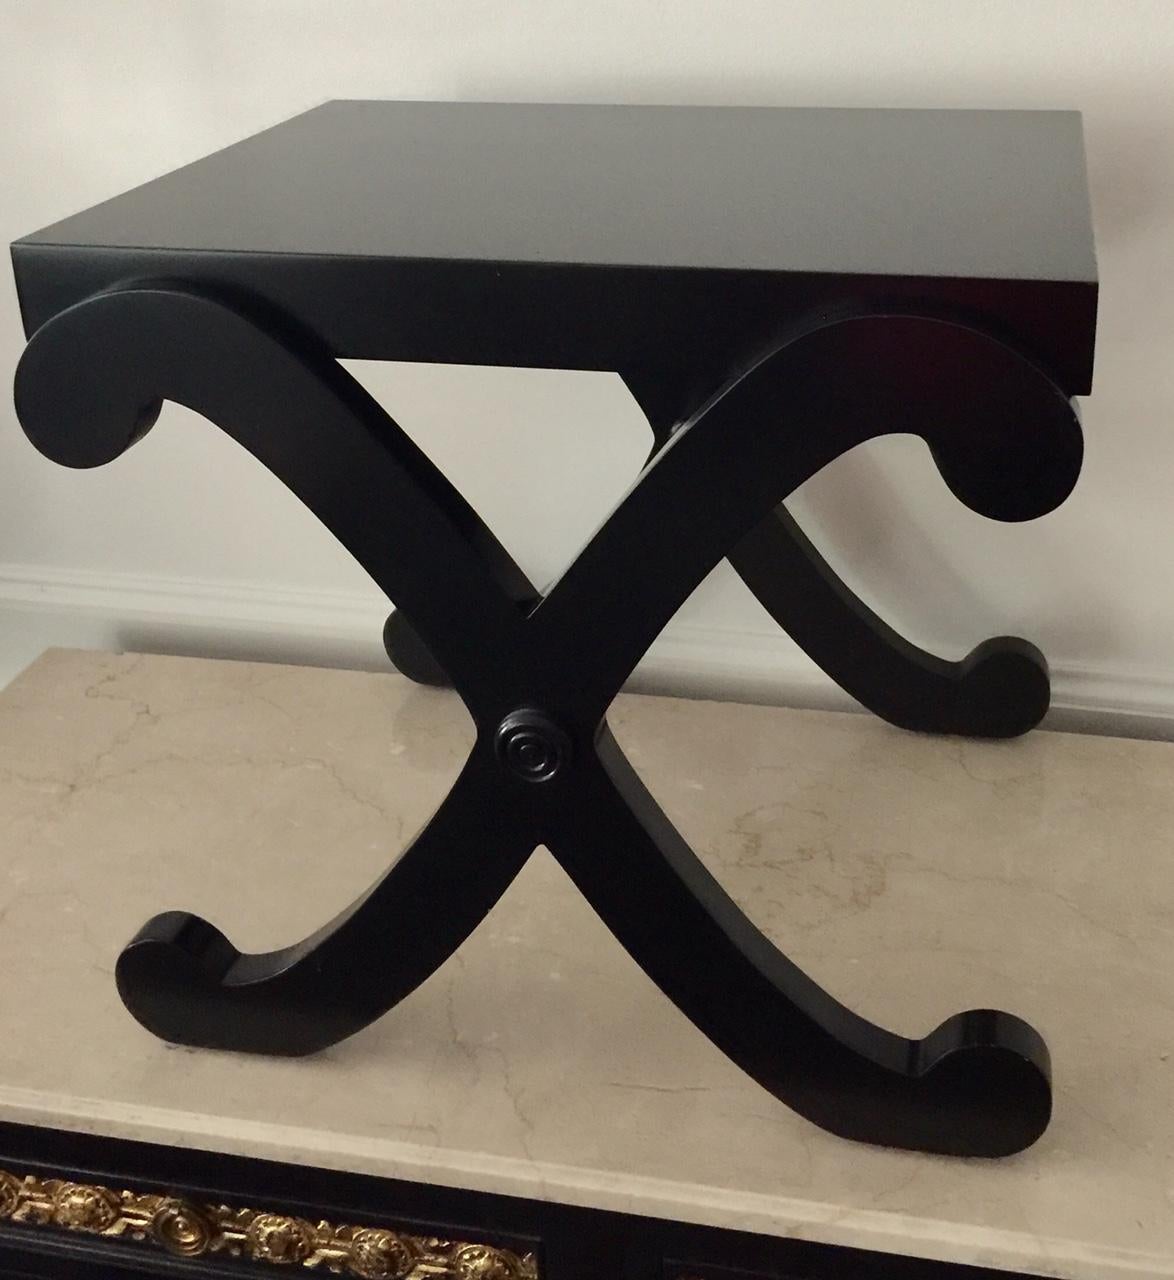 Schwarz lackierter Tisch mit X-gekreuzten Beinen im neoklassischen Stil.
Schöner Beistelltisch aus schwarzem Lack im Stil des Hollywood Regency mit eleganten X-Beinen.
Preis pro Stück. 1 verfügbar.